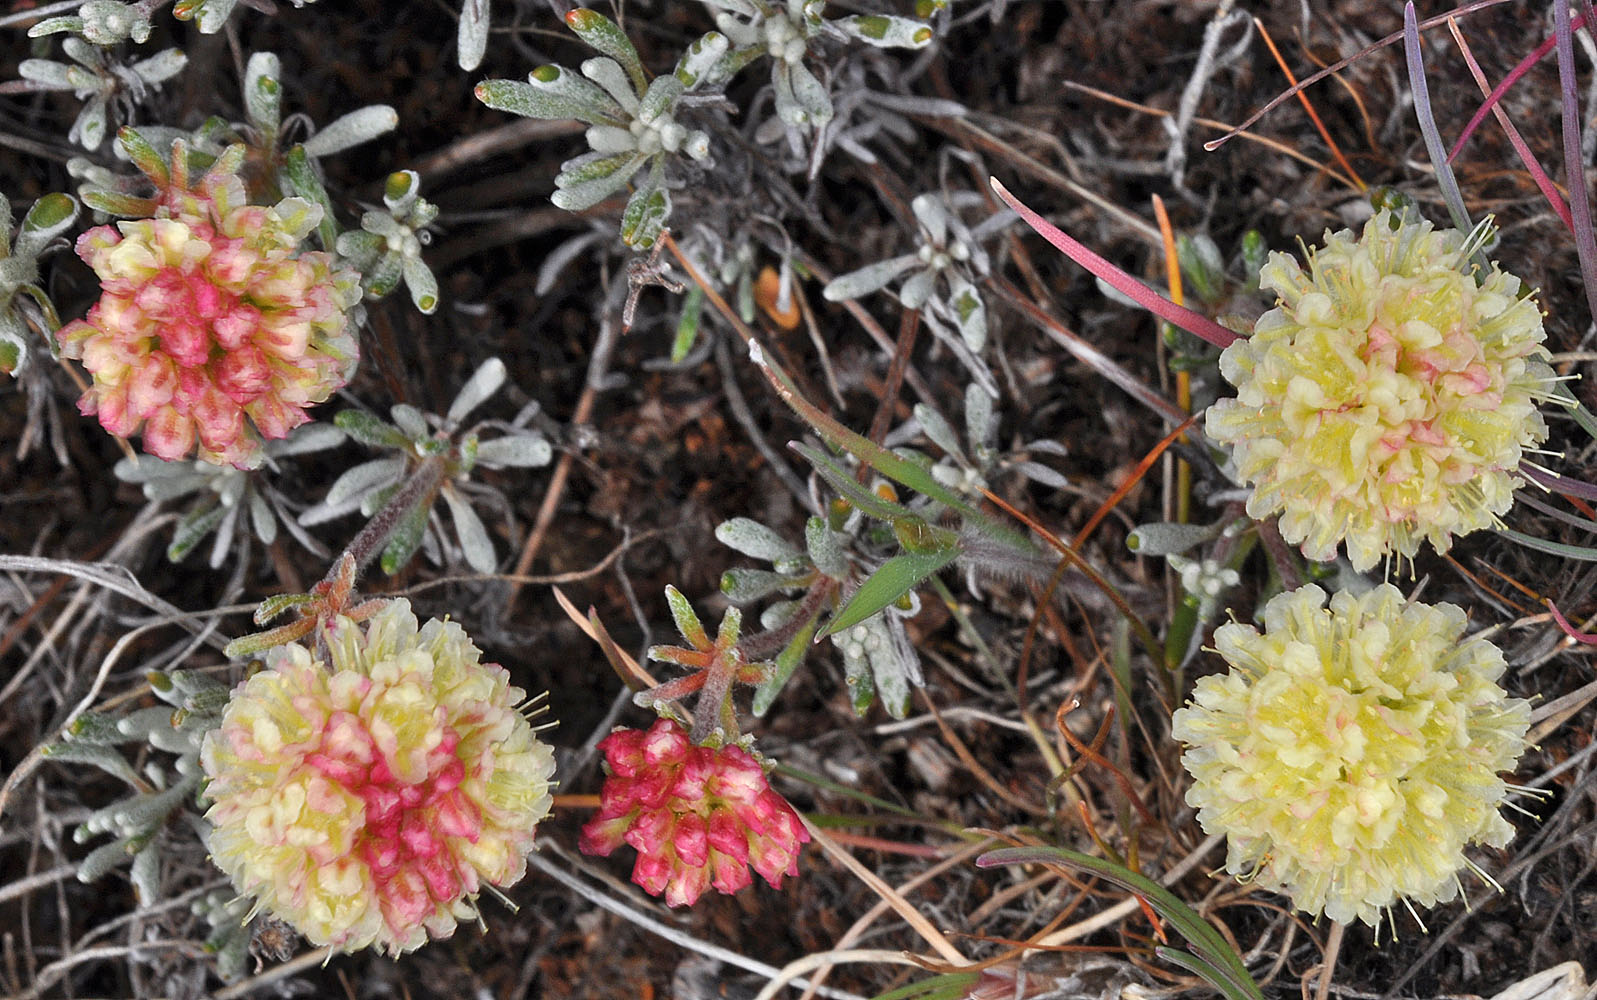 Flora of Eastern Washington Image: Eriogonum douglasii